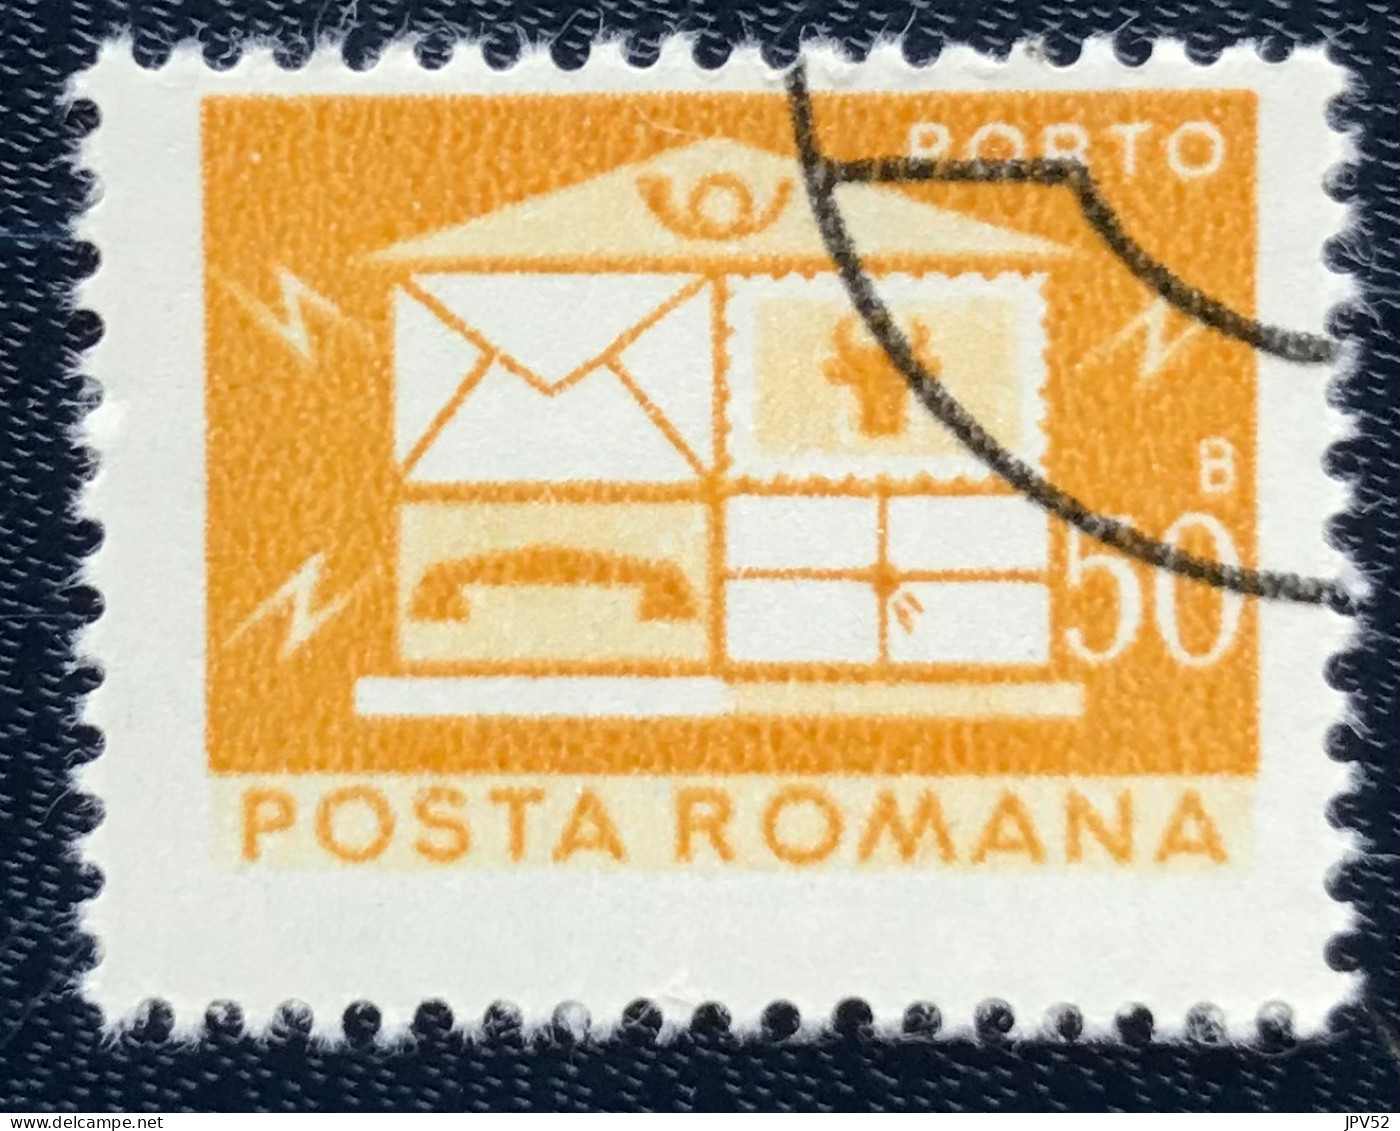 Romana - Roemenië - C14/55 - 1982 - (°)used - Michel 126 - Brievenbus - Postage Due